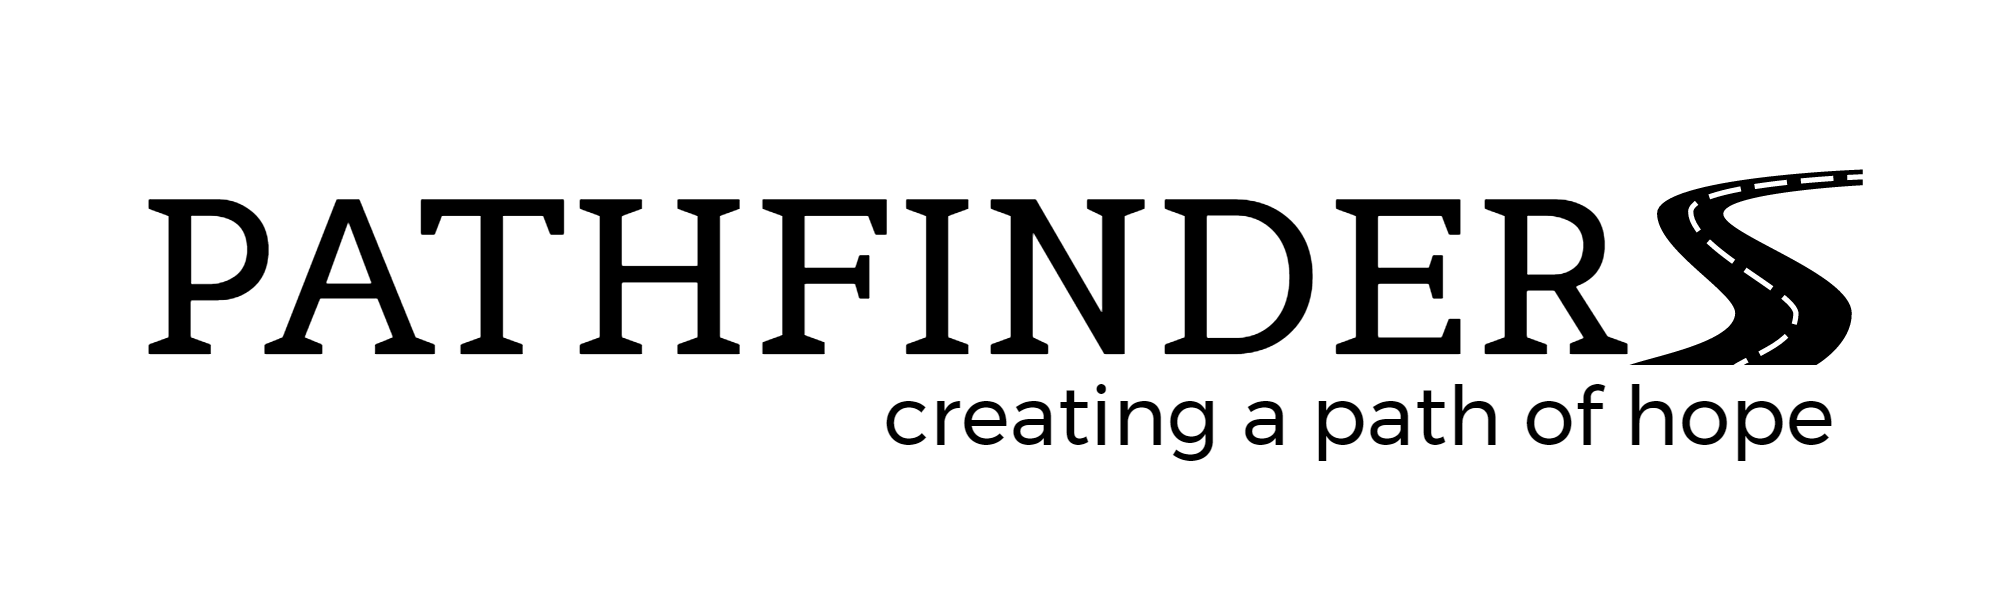 PATHFINDER-logo (1).png